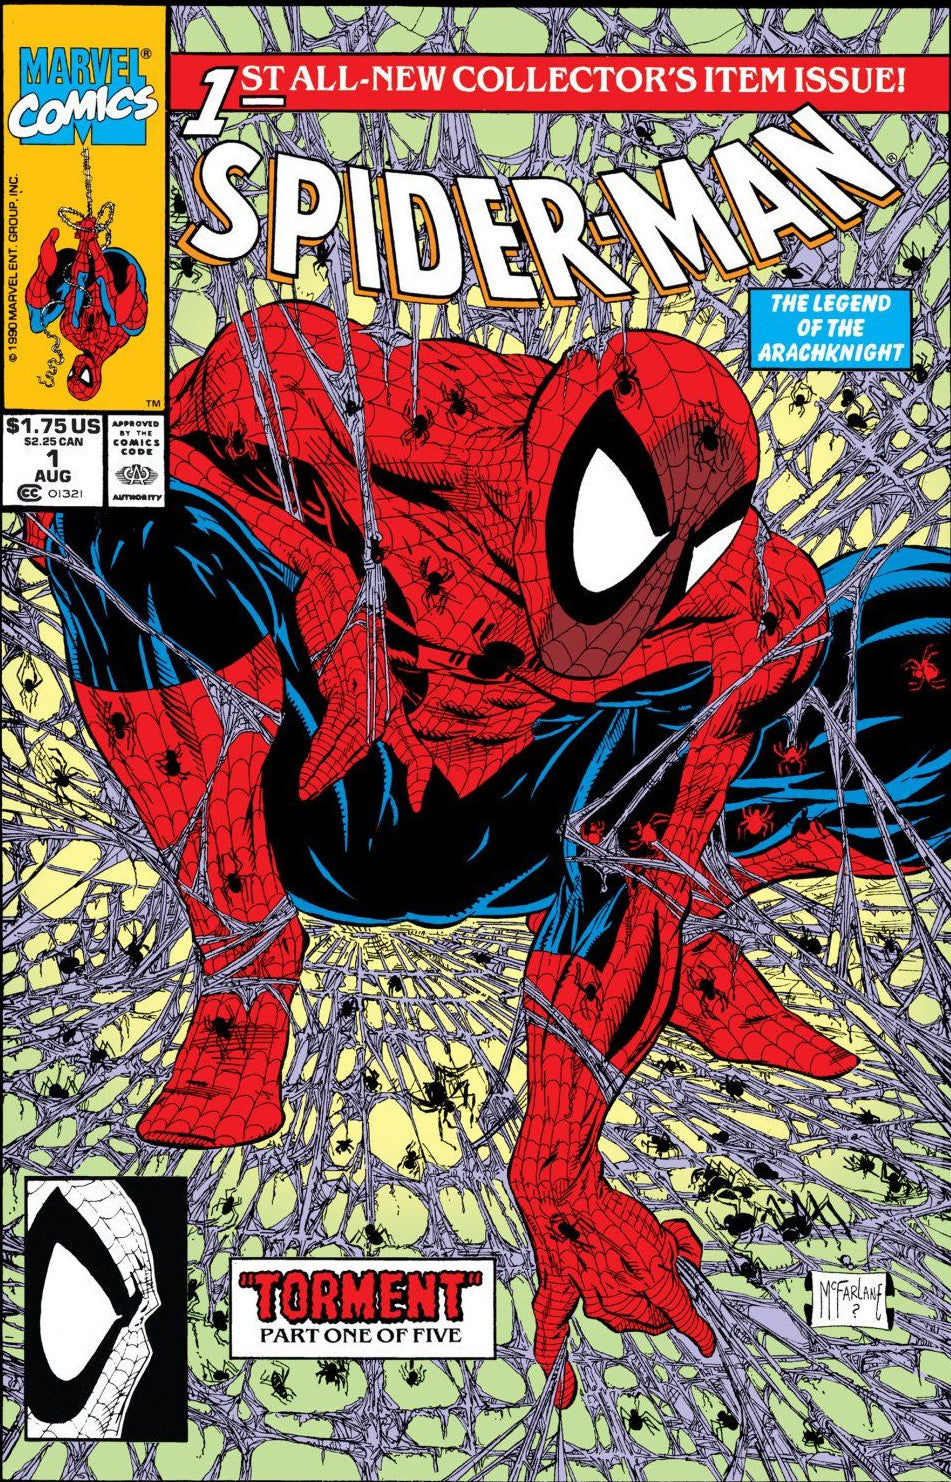 Spider-Man #1 Vol 1